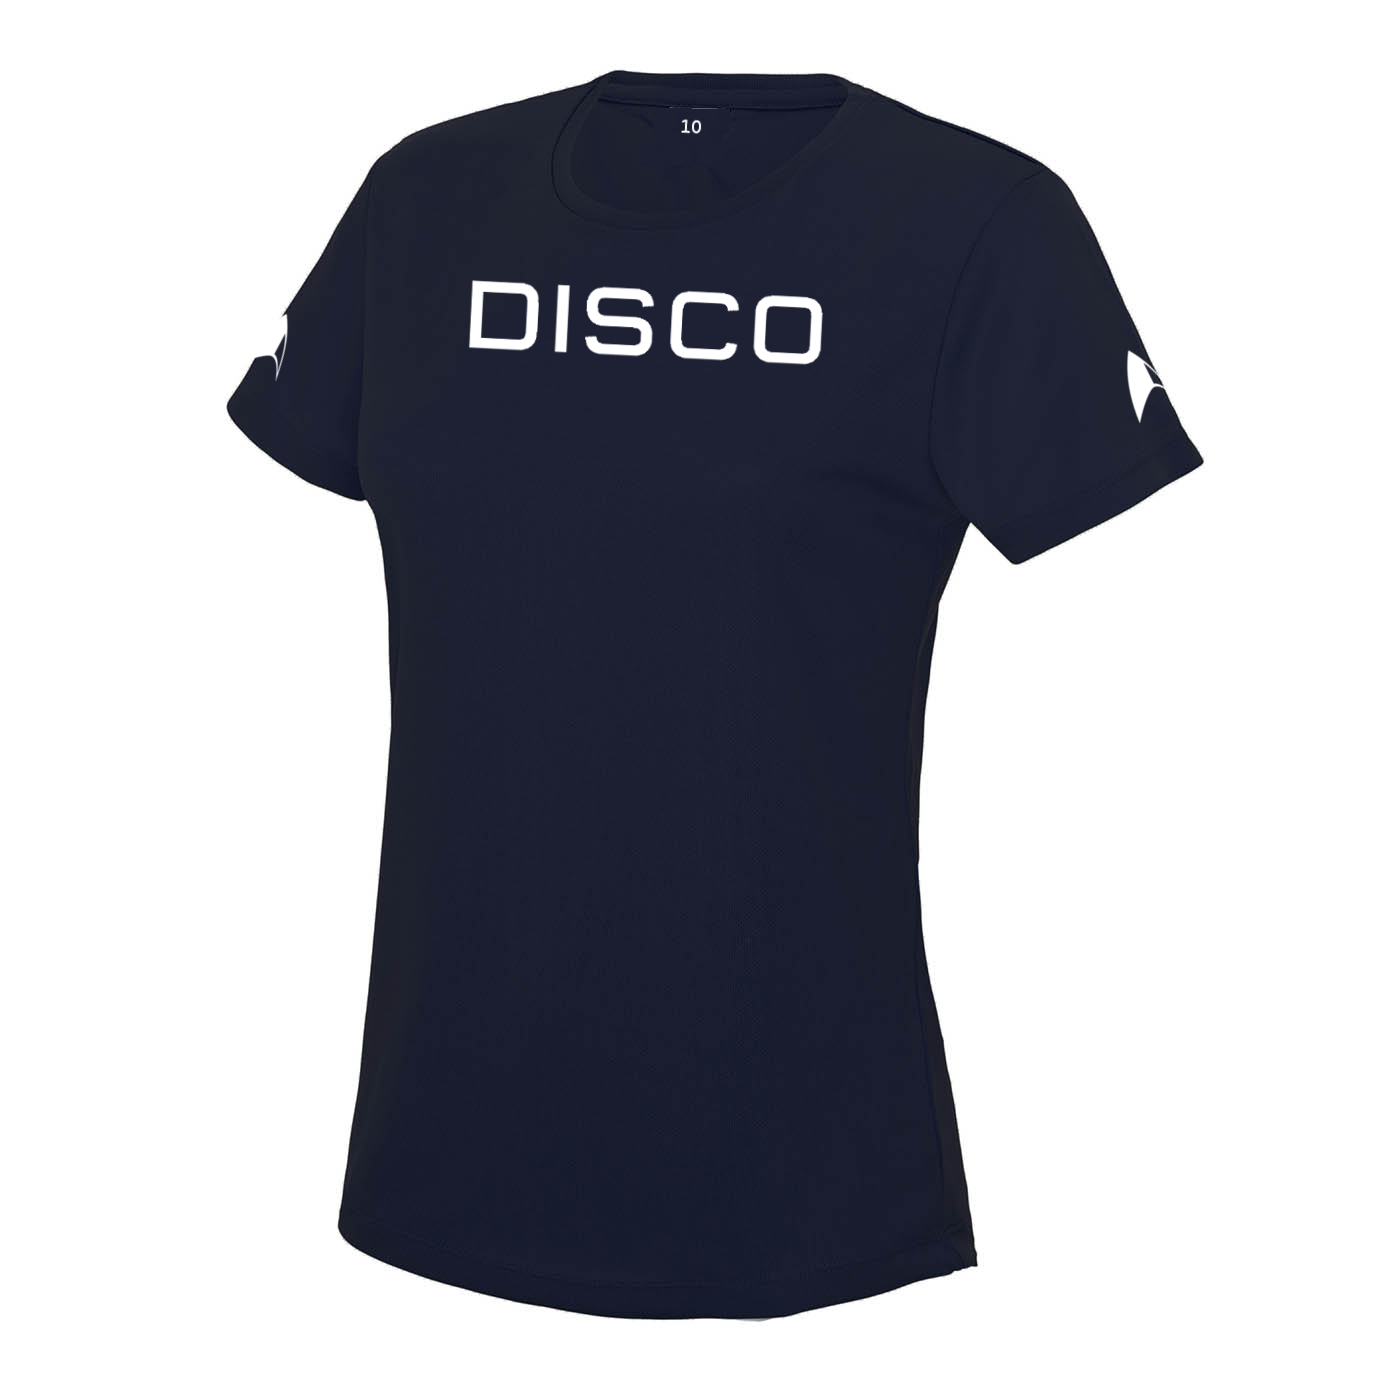 Star Trek Discovery DISCO Girlie Fit T Shirt 3D Effect